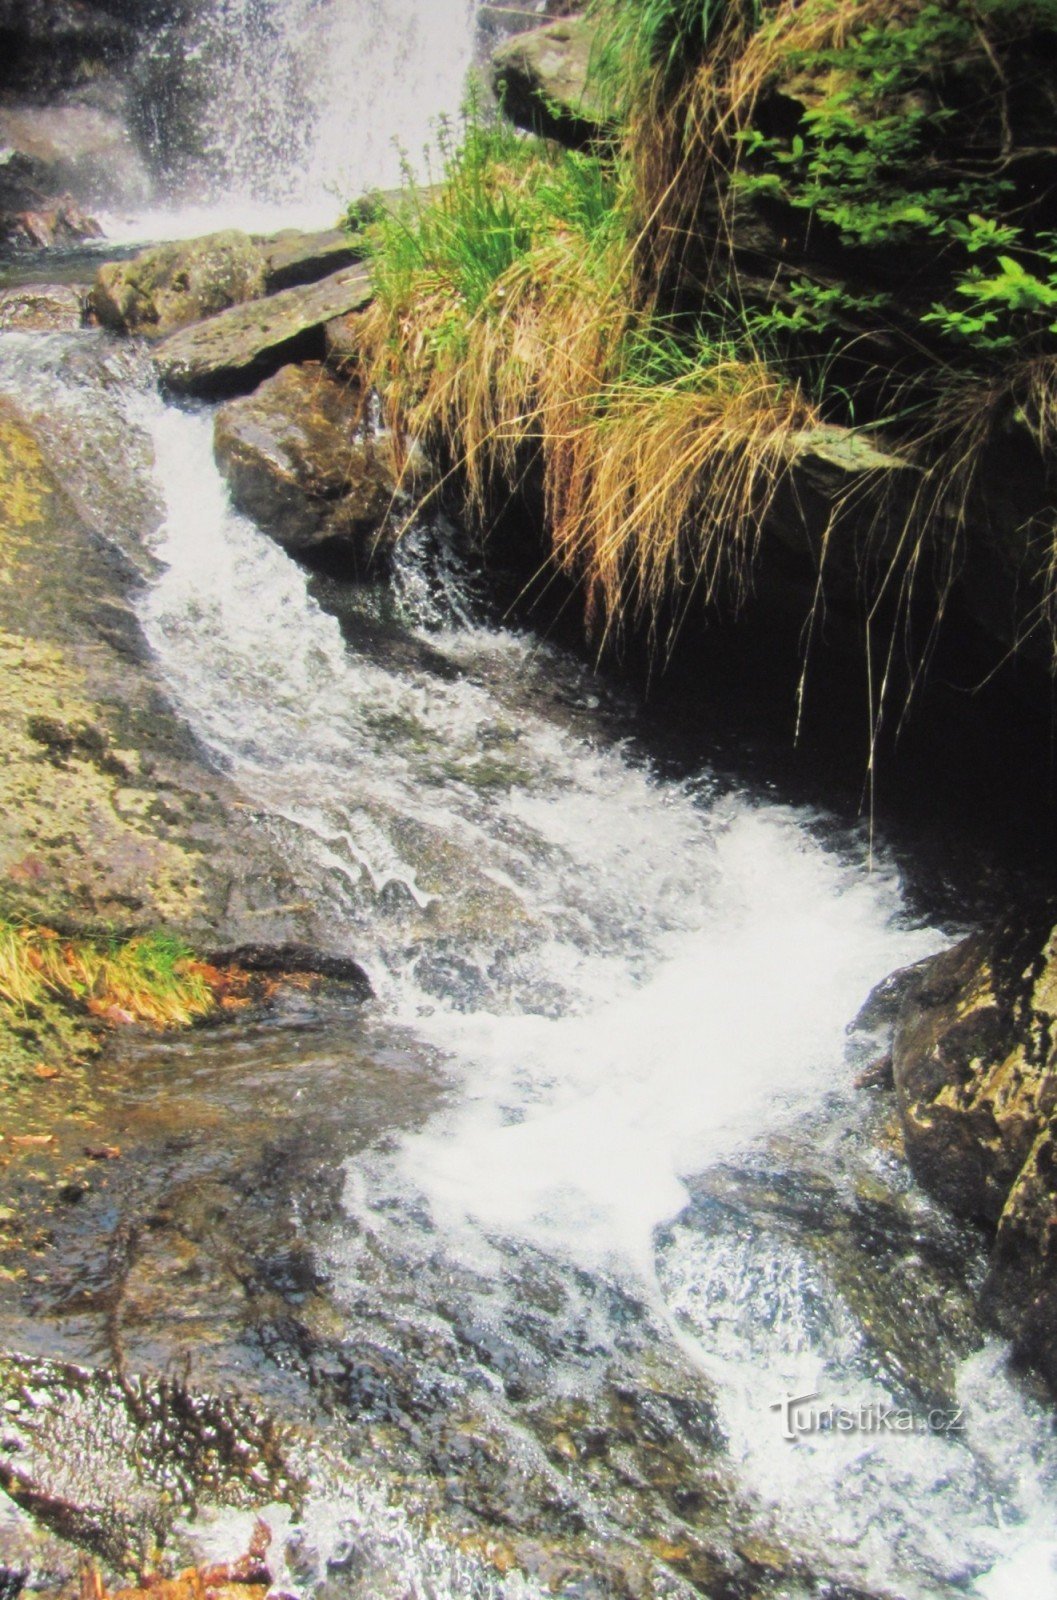 Naar de watervallen op de Borový potok